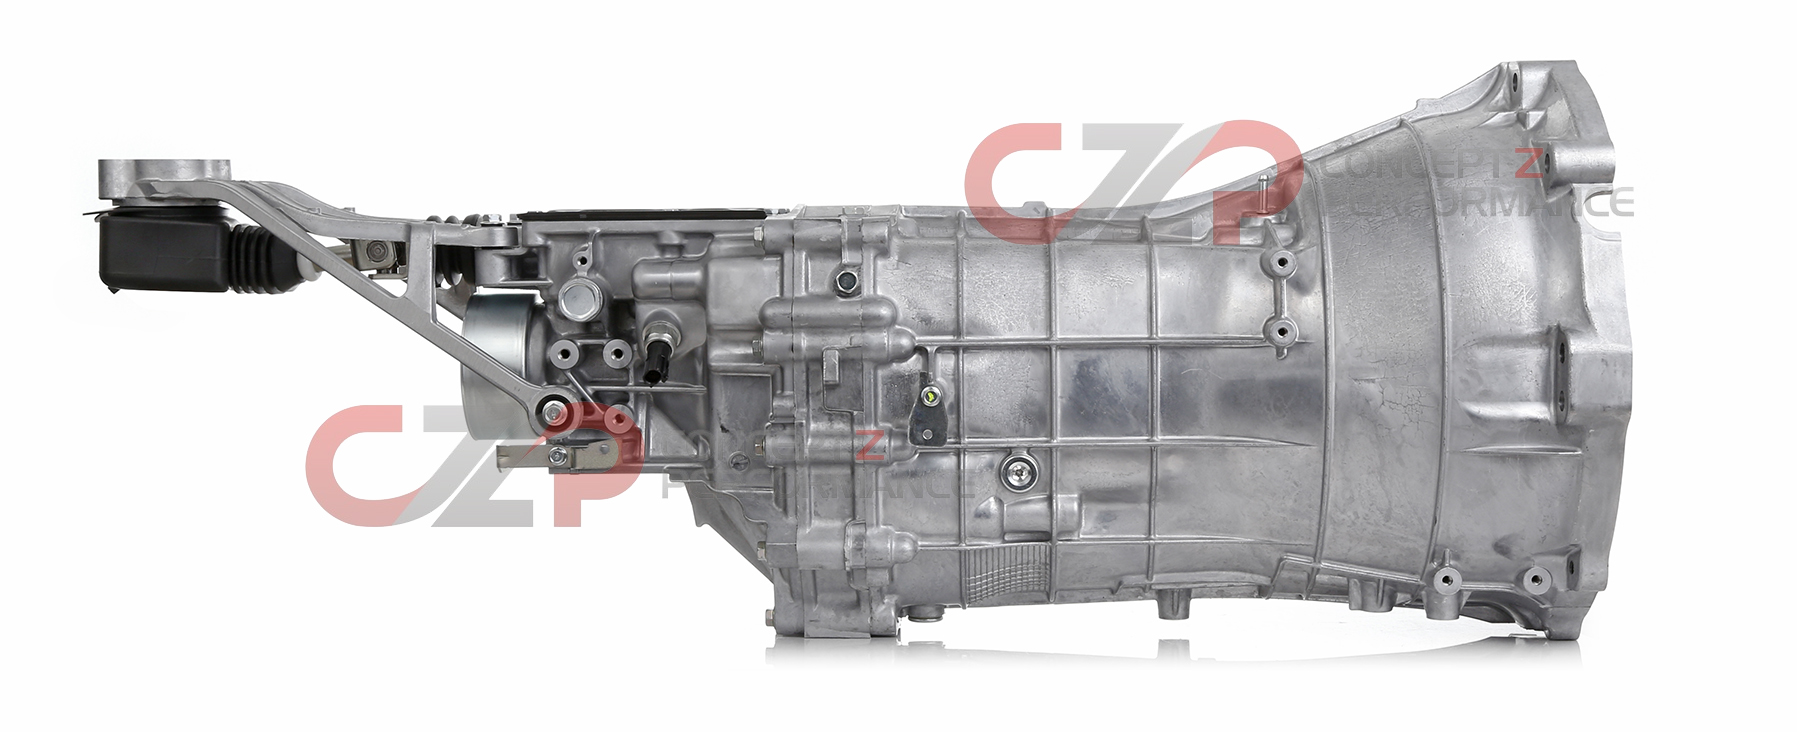 Infiniti OEM 32010-JK41A Manual Transmission Assembly - Infiniti G35 07-08, G37 09-14 & Q40 2015 Sedan V36 / G37 08-13 & Q60 14-15 Coupe CV36